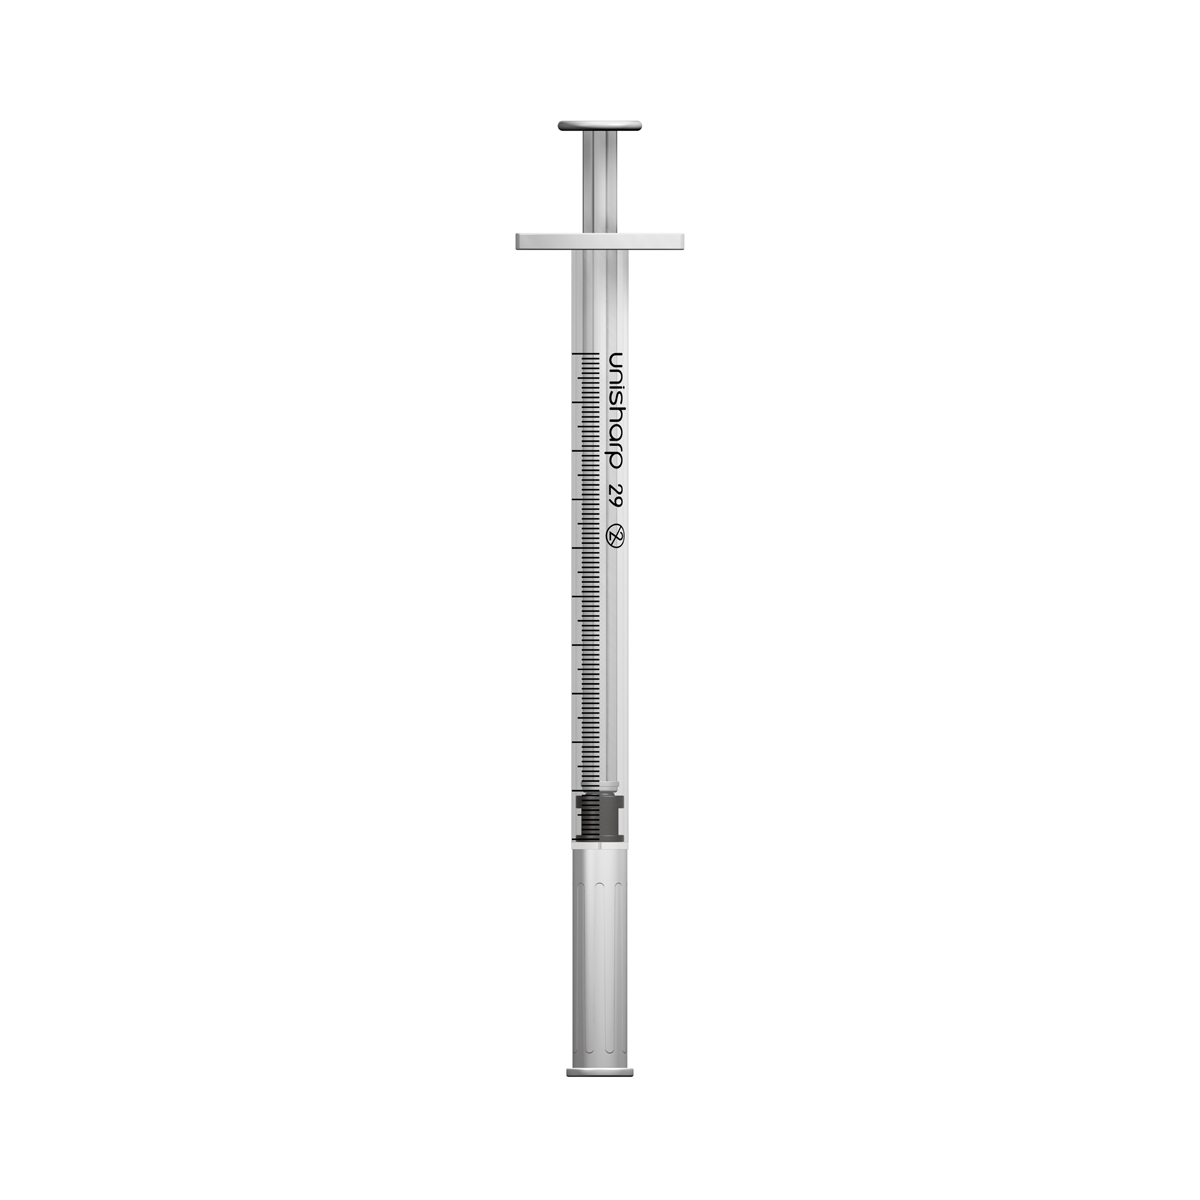 Unisharp 1ml 29G fixed needle syringe: white 